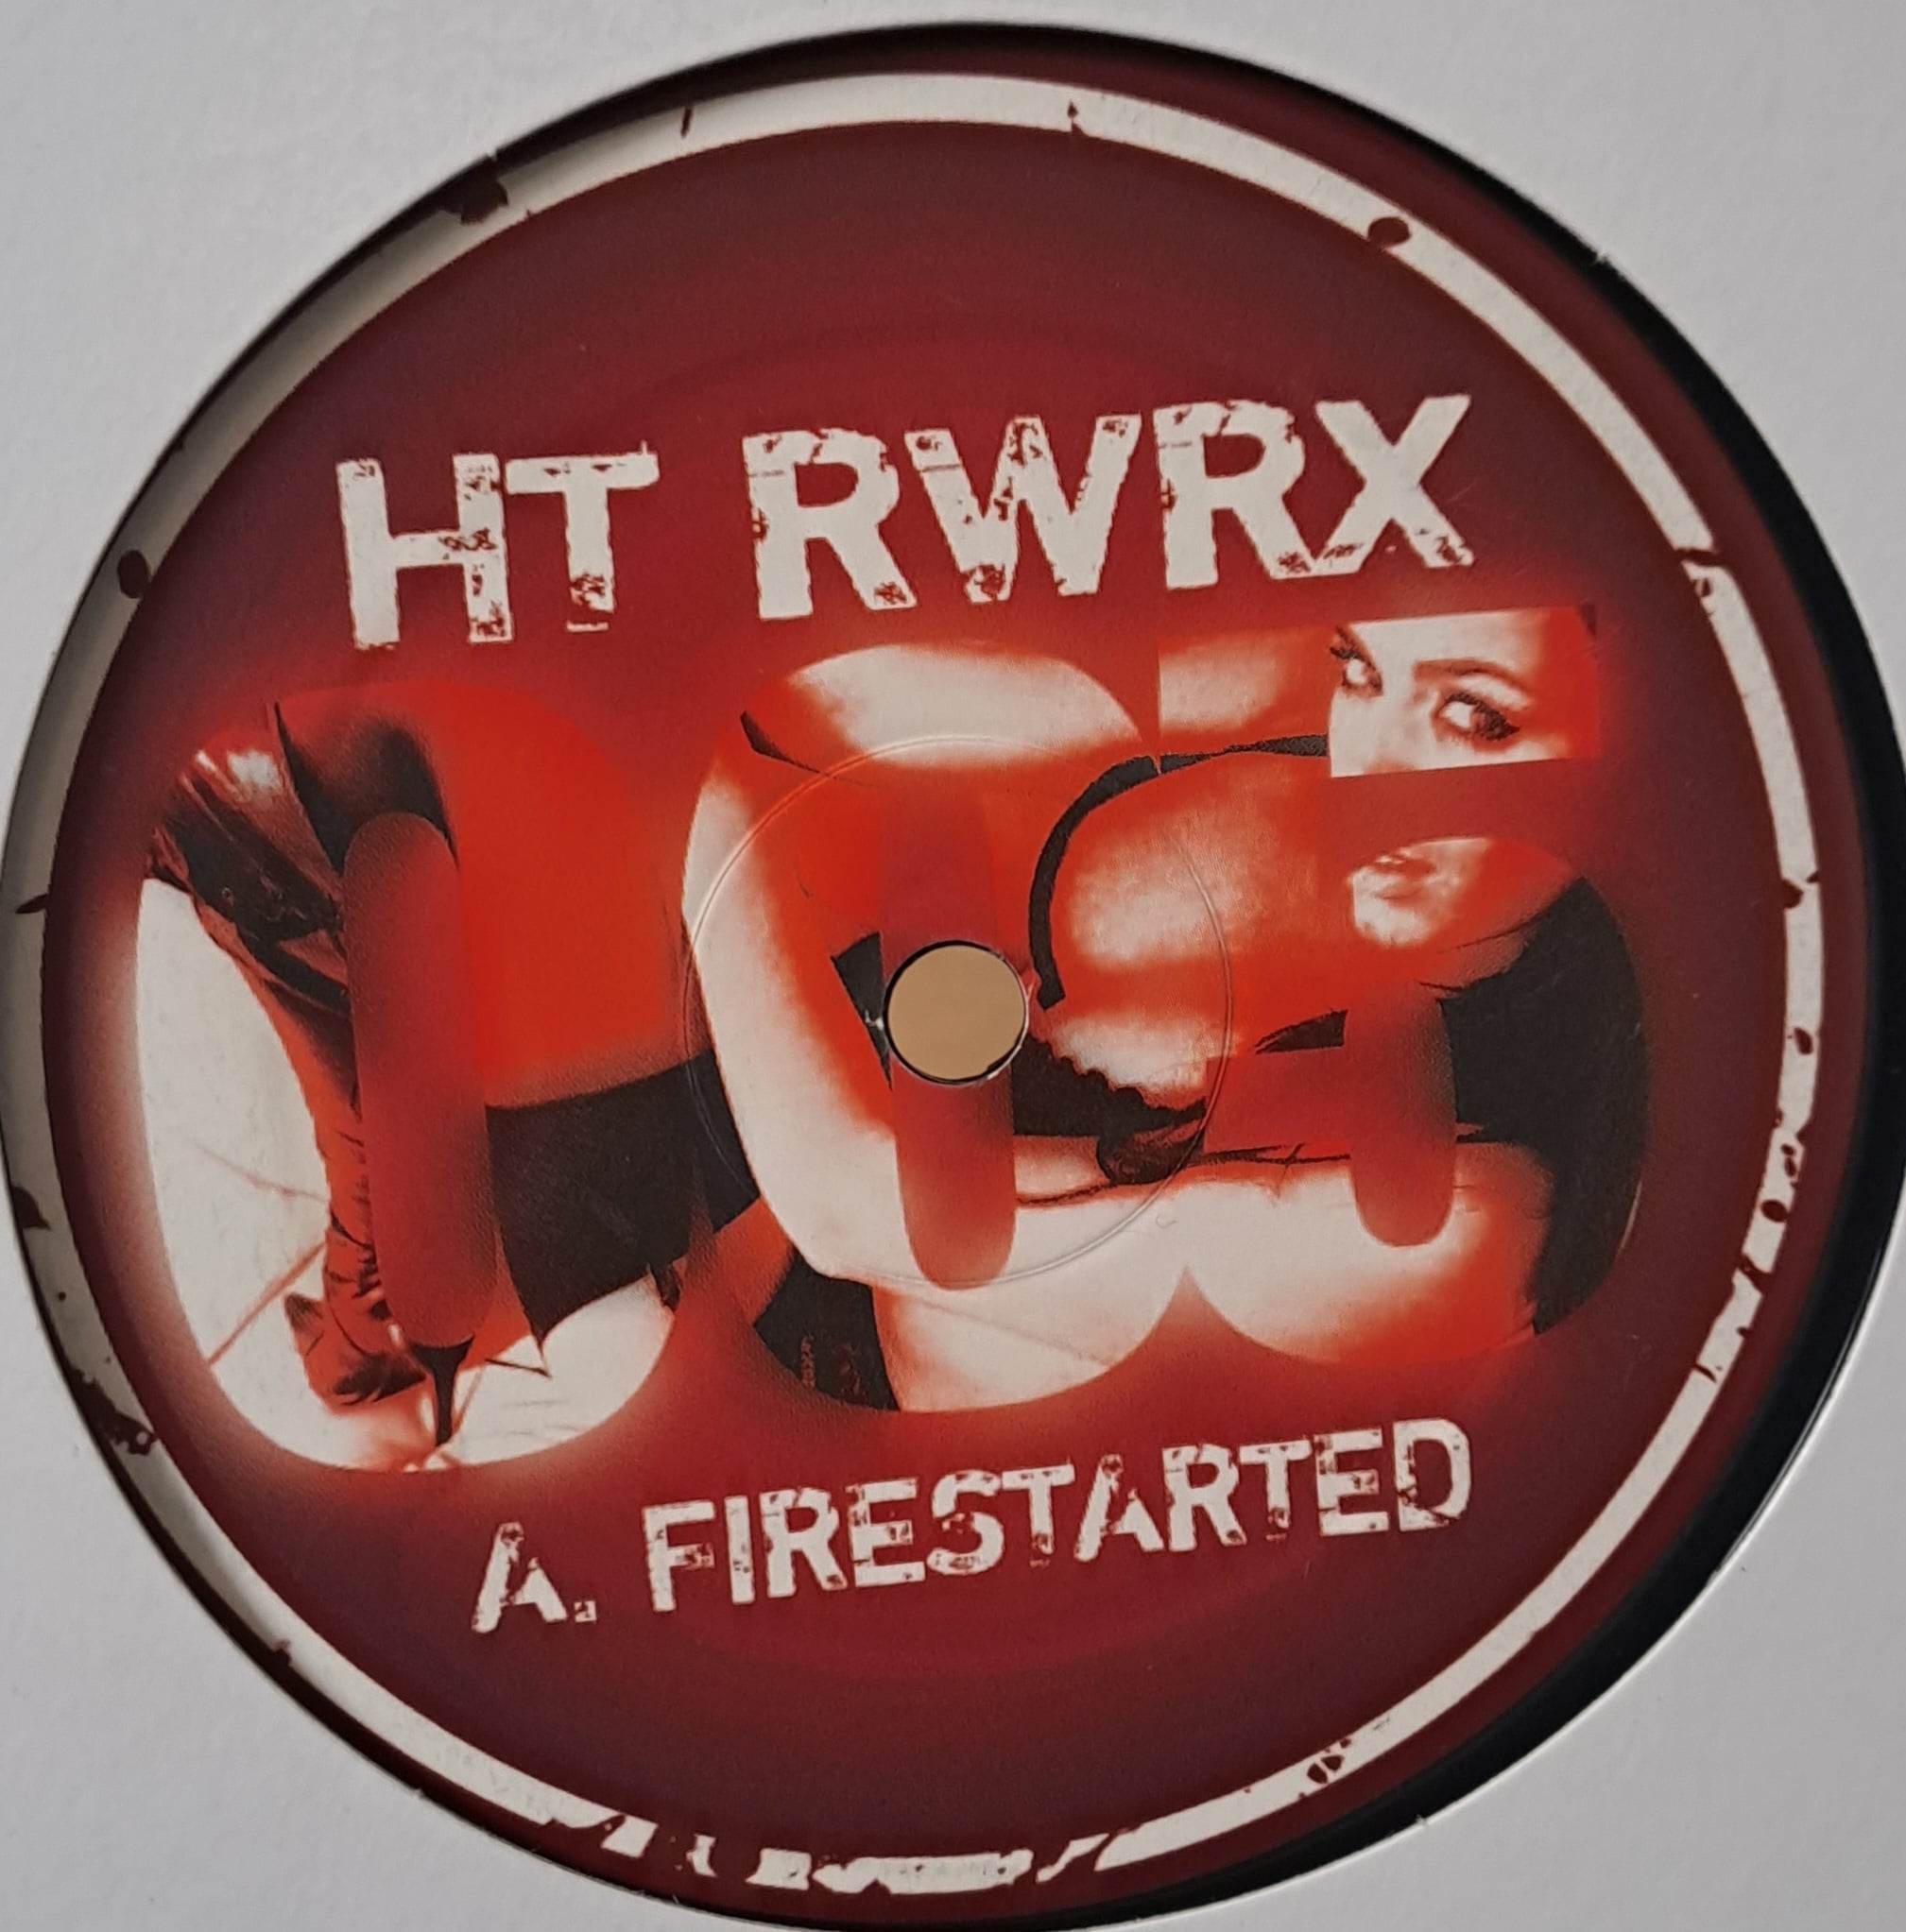 HT RWRX 005 - vinyle hard techno